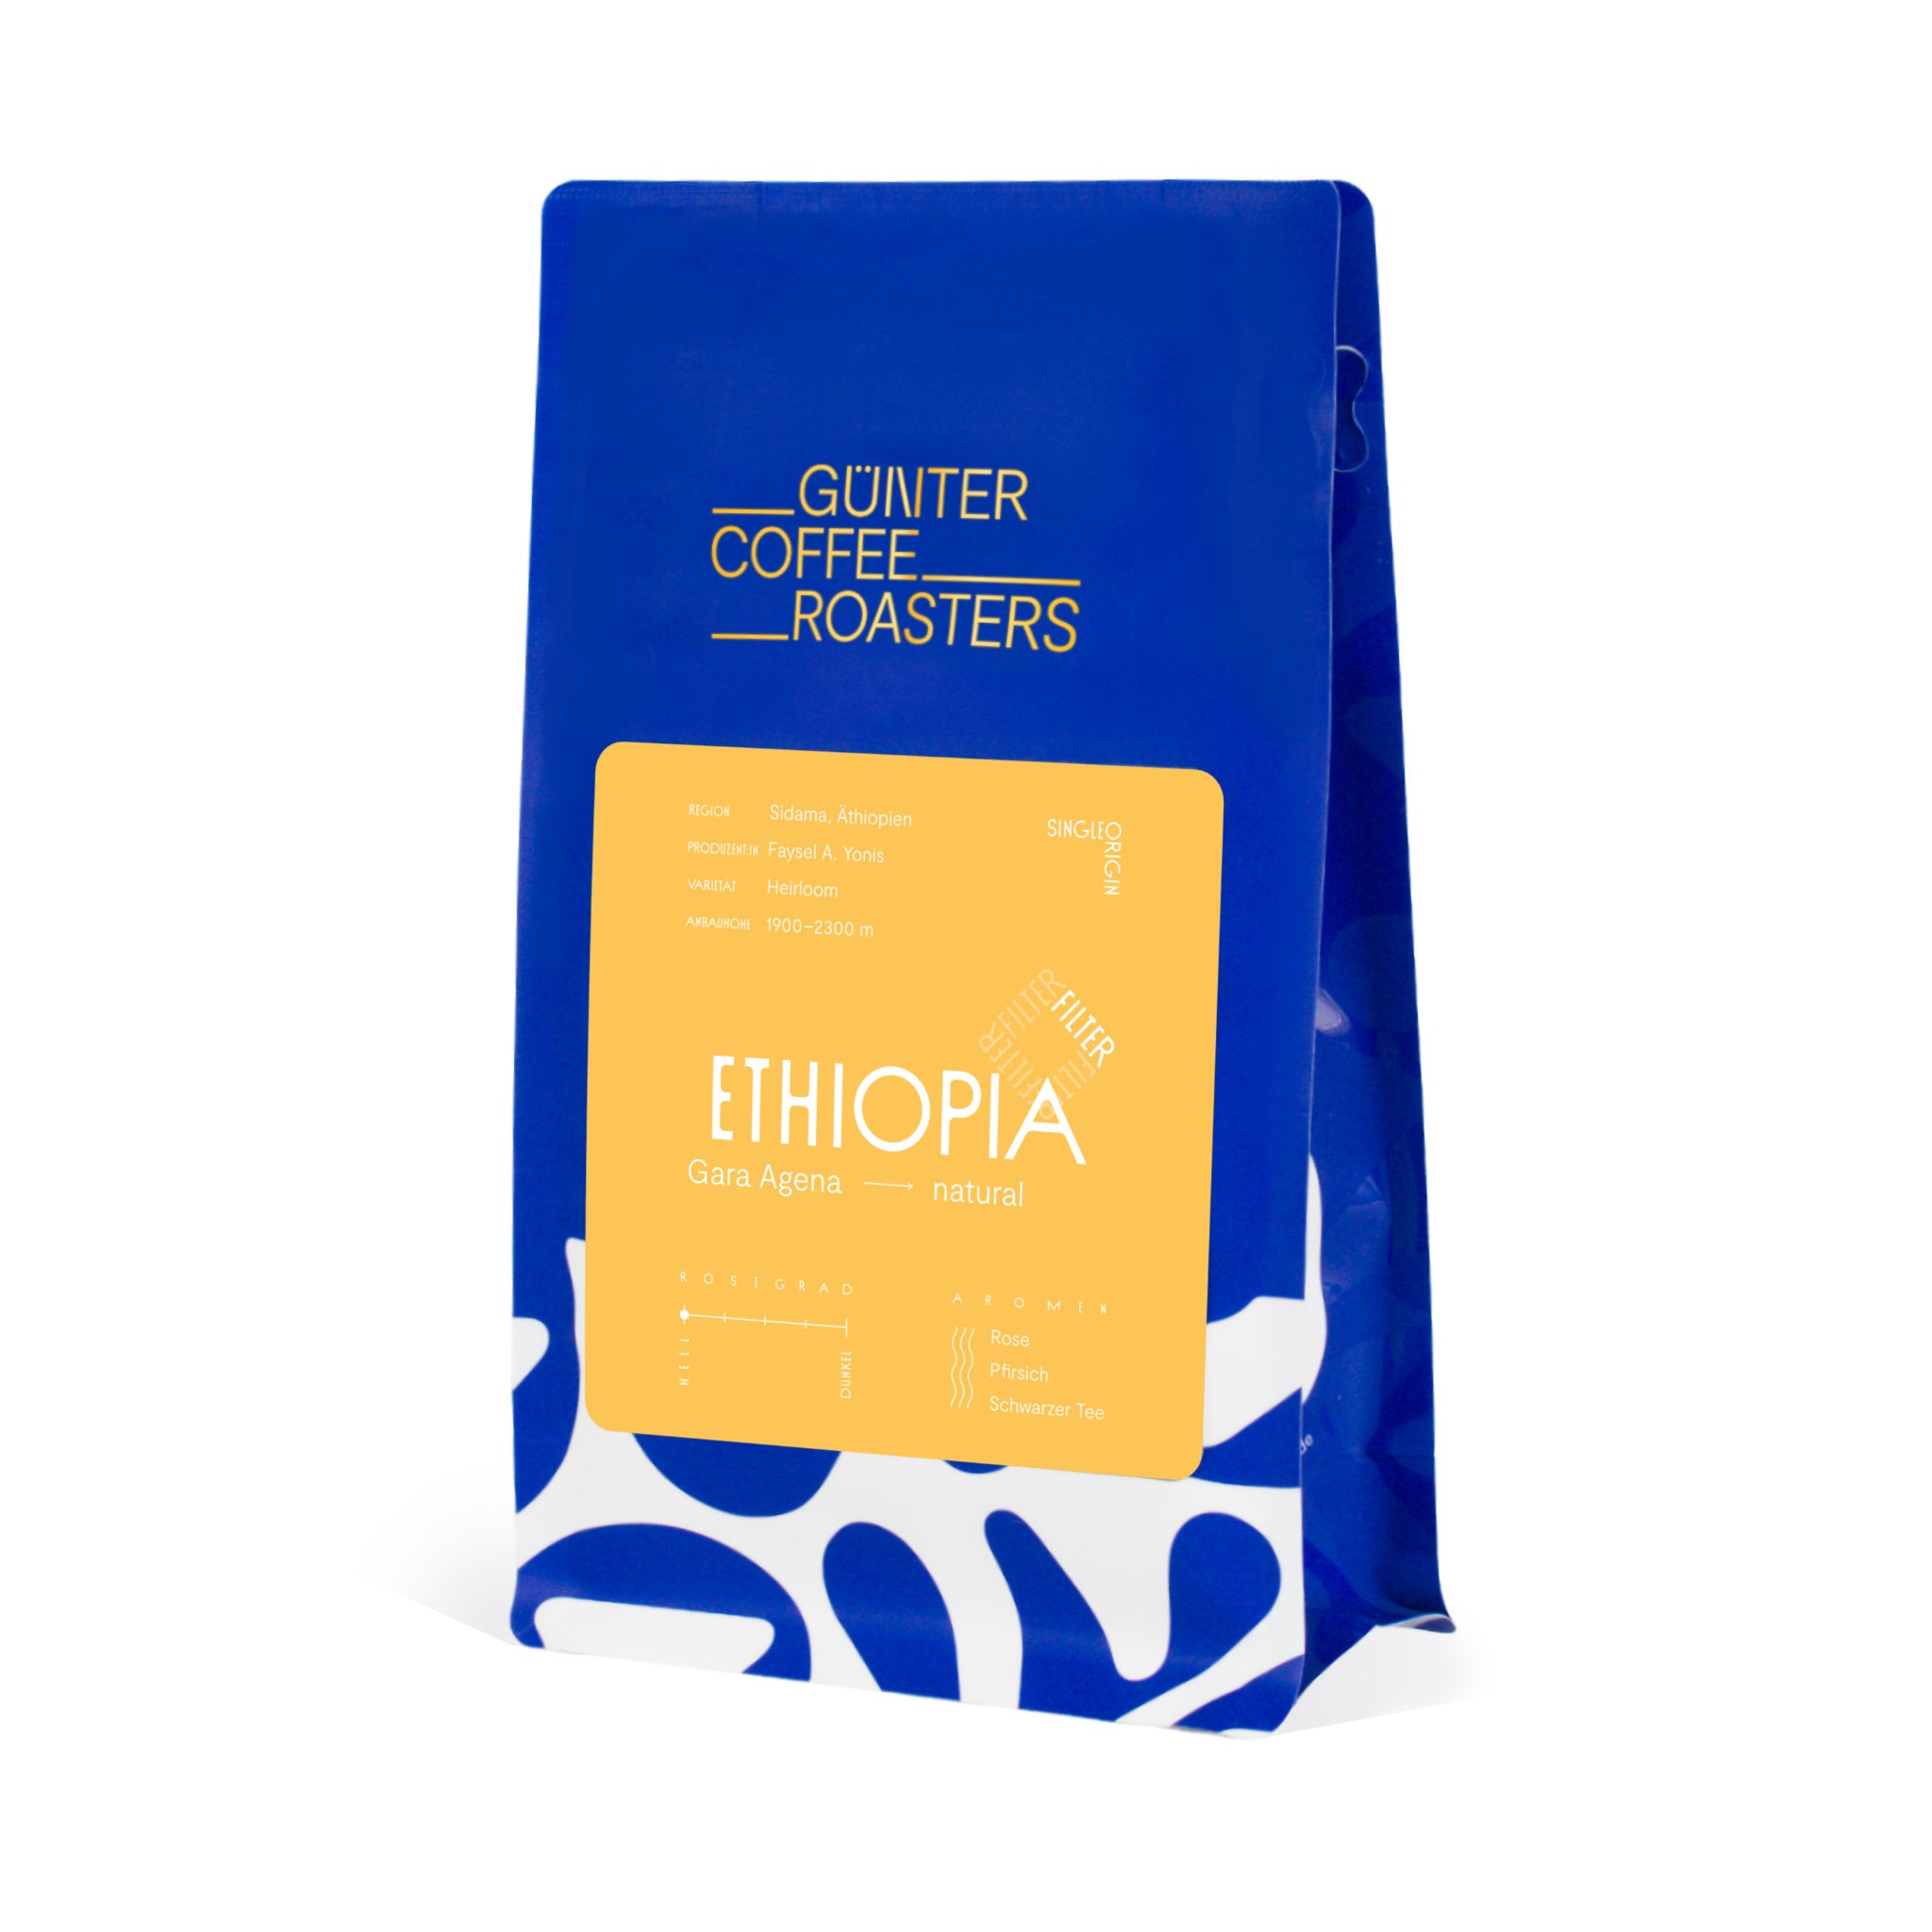 Produktpackung Ethiopia Gara Agena, natürlich aufbereiteter Kaffee, hell geröstet zur Filterkaffeezubereitung. Noten von Rose, Pfirsich und schwarzem Kaffee.